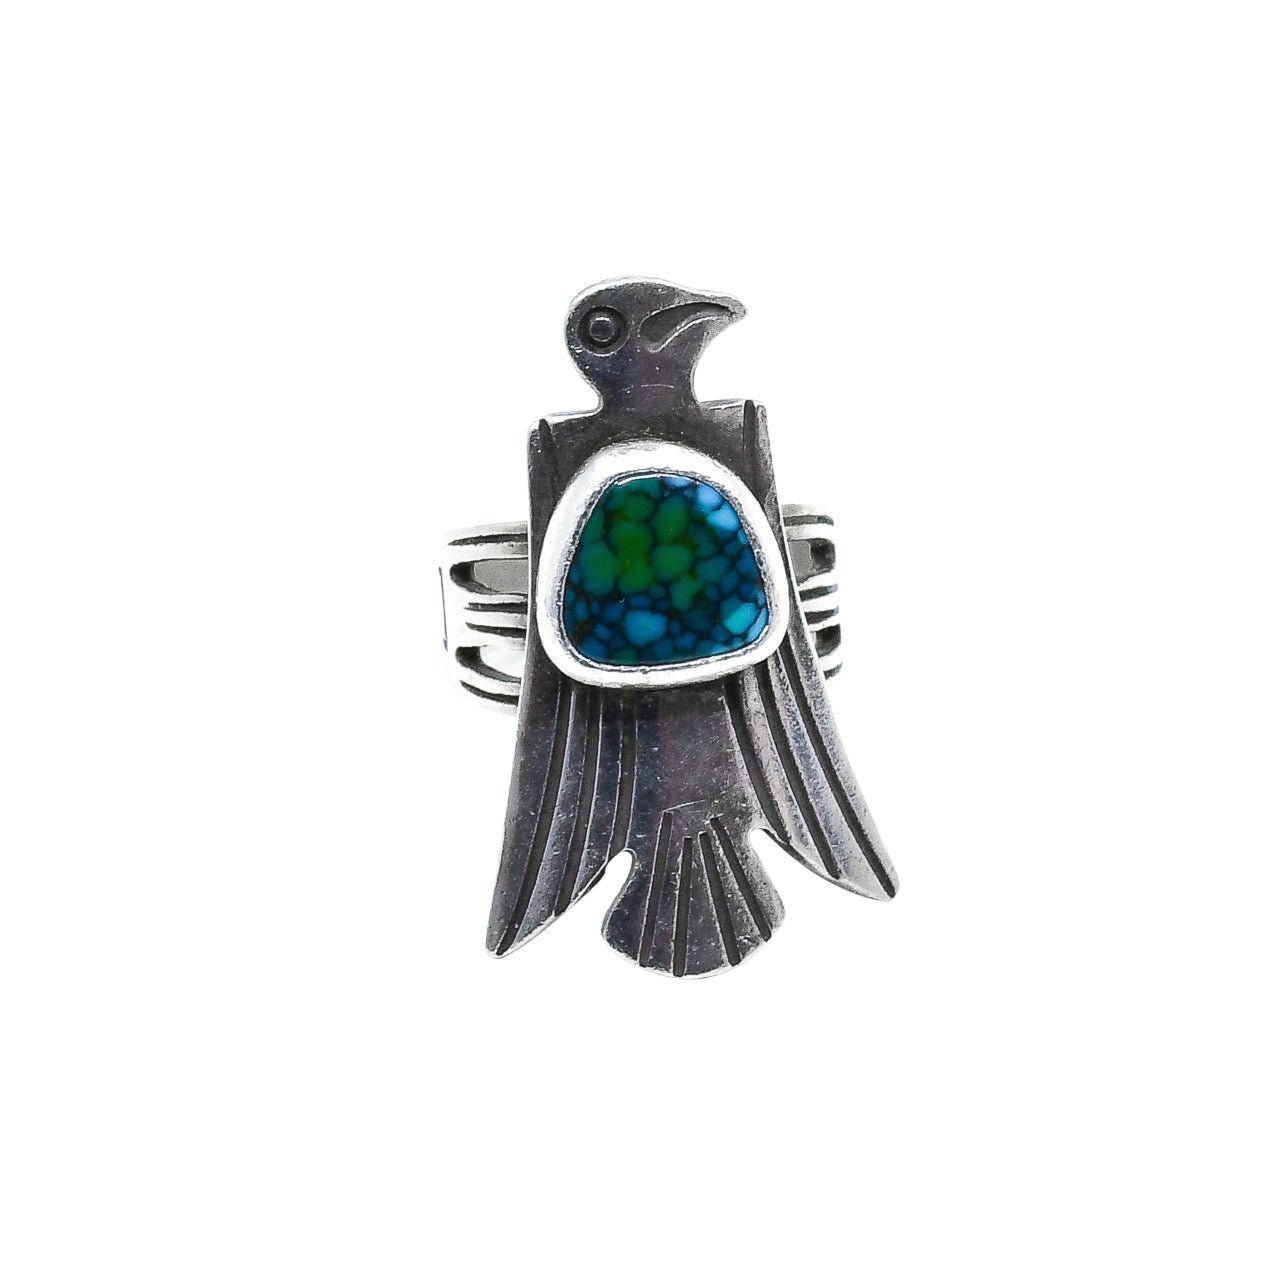 Thunderbird Ring With Turquoise by Jennifer Jesse Smith - Turquoise & Tufa